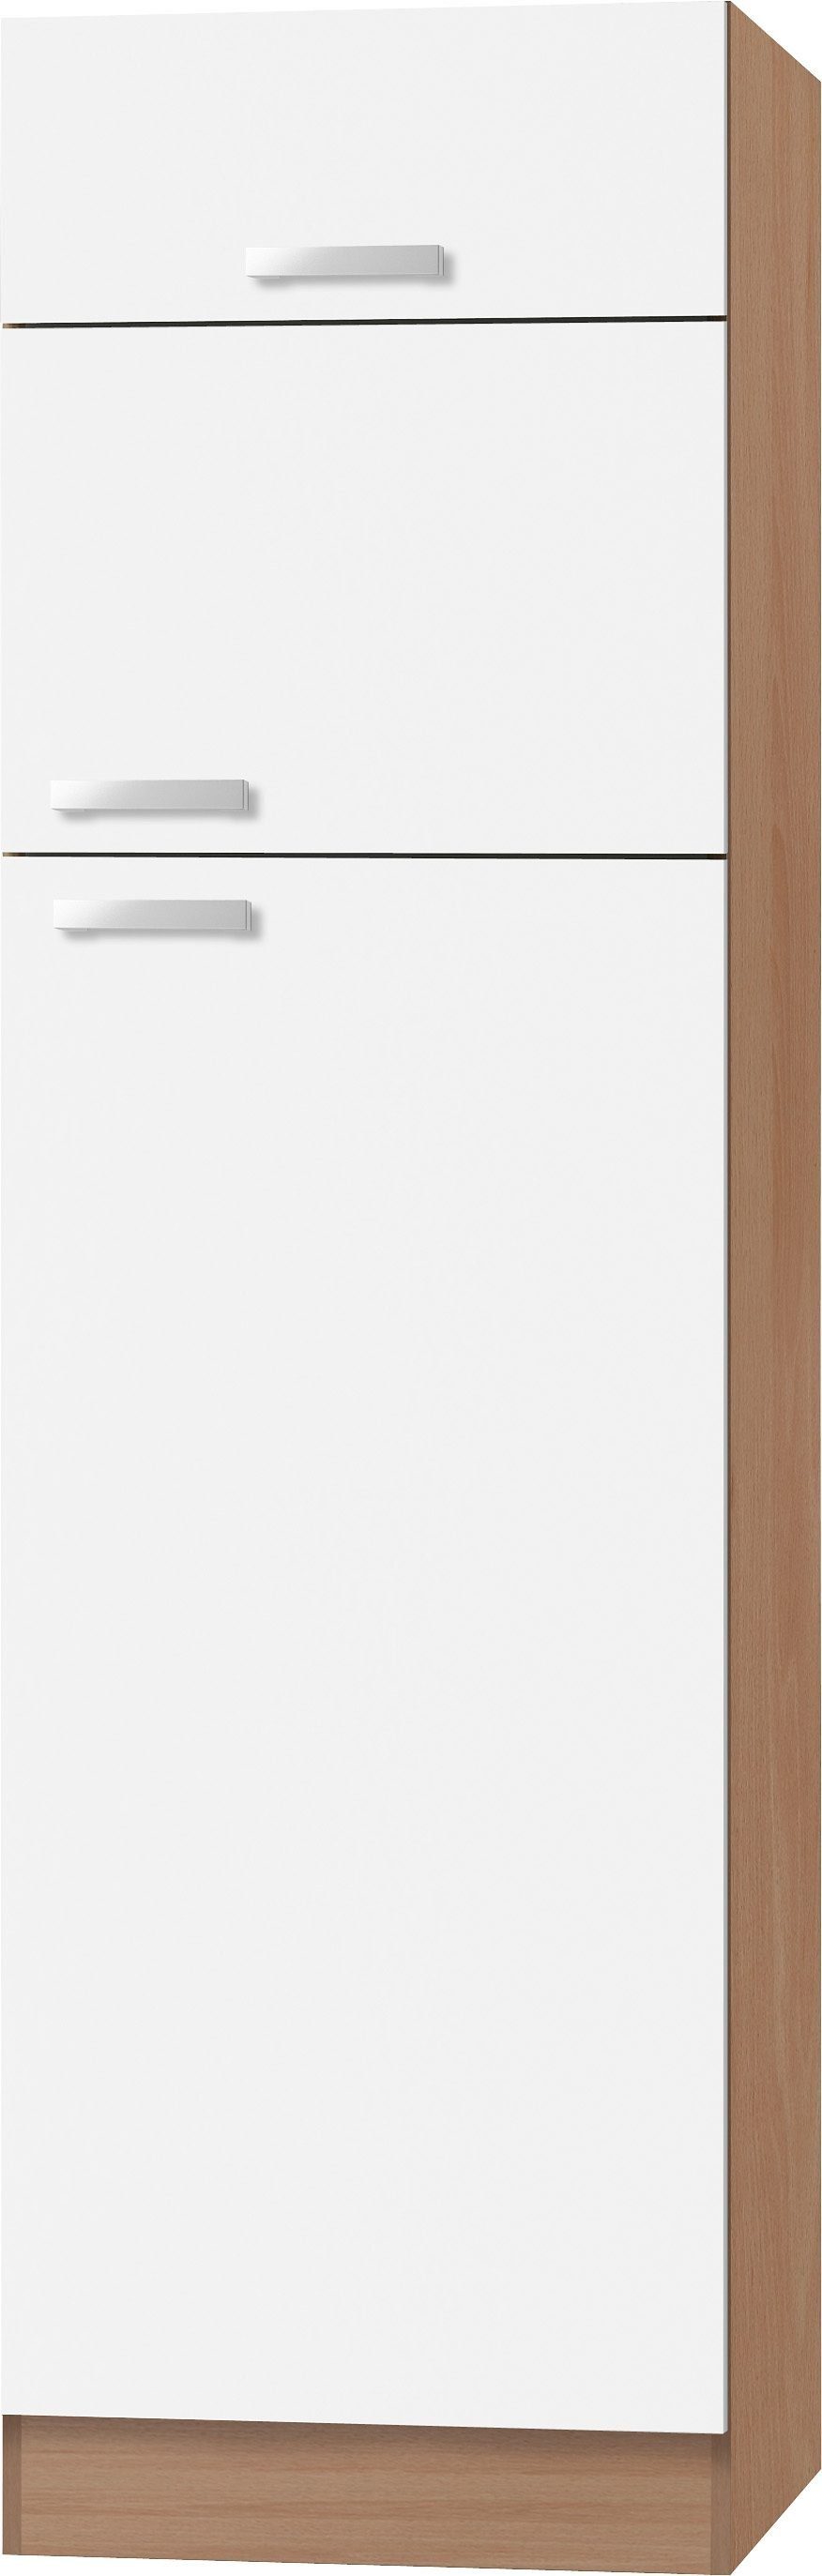 OPTIFIT Kühlumbauschrank Odense 60 cm breit, 207 cm hoch, für Kühlgefrierkombinationen maß 144 cm weiß/buche | buchefarben